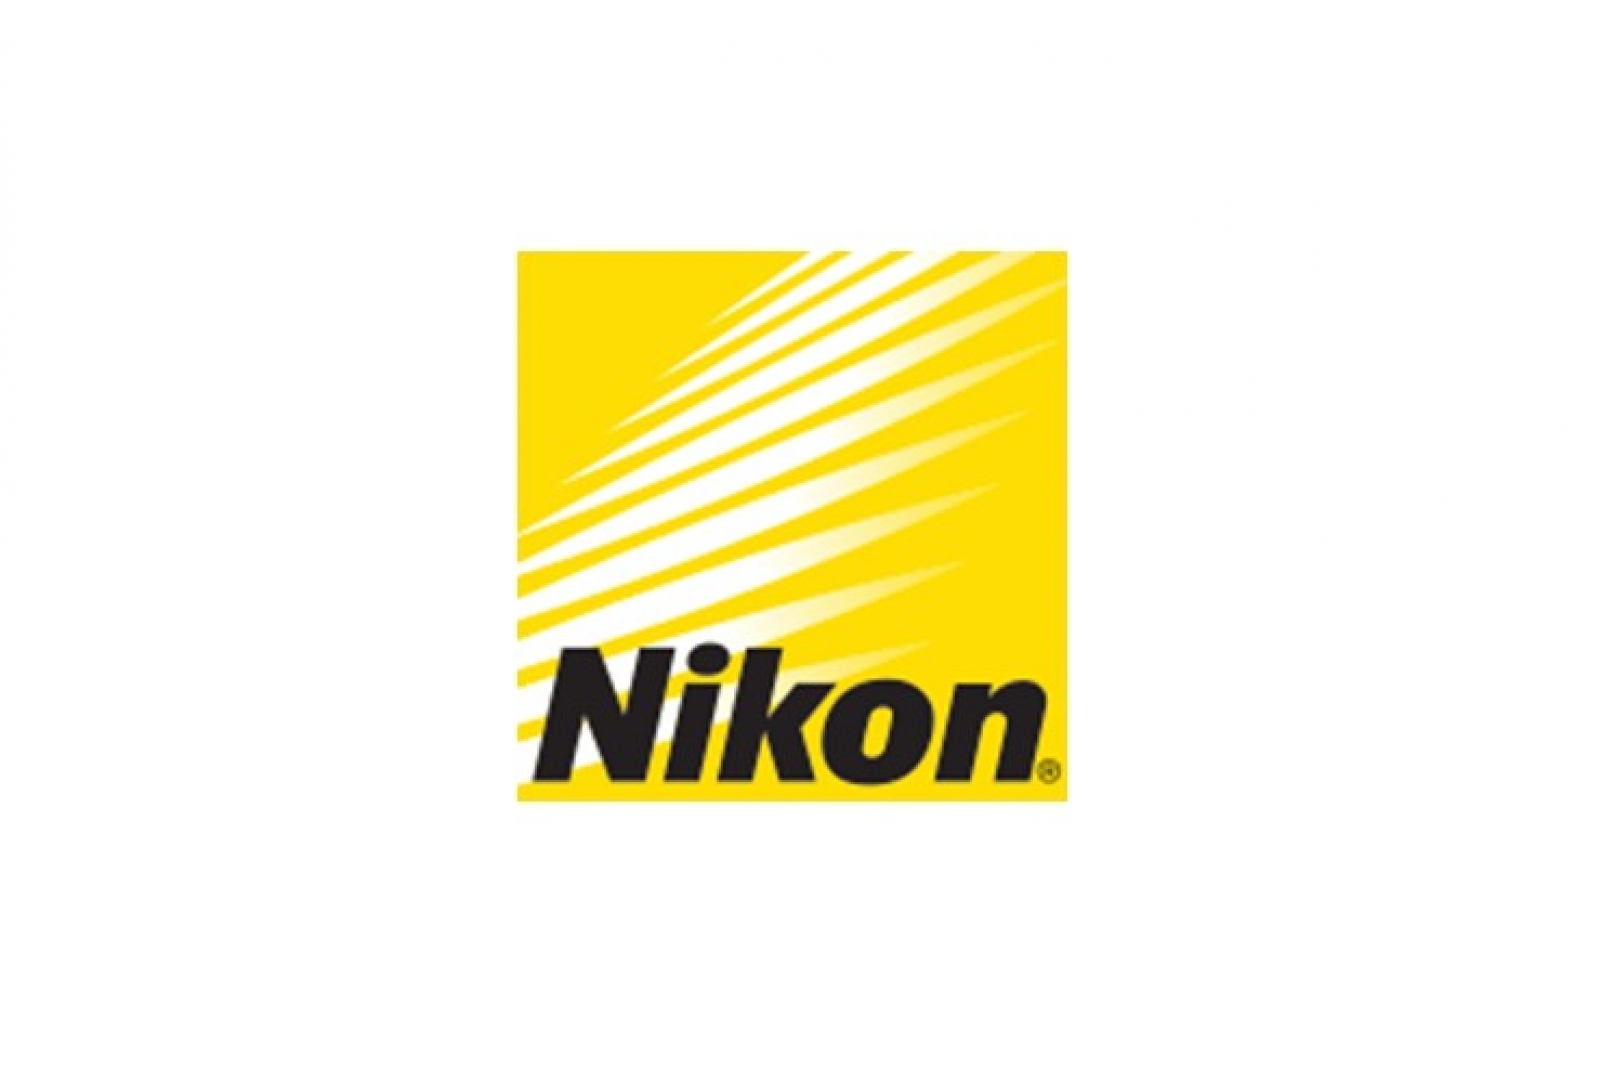 Nikon Europe sponsor